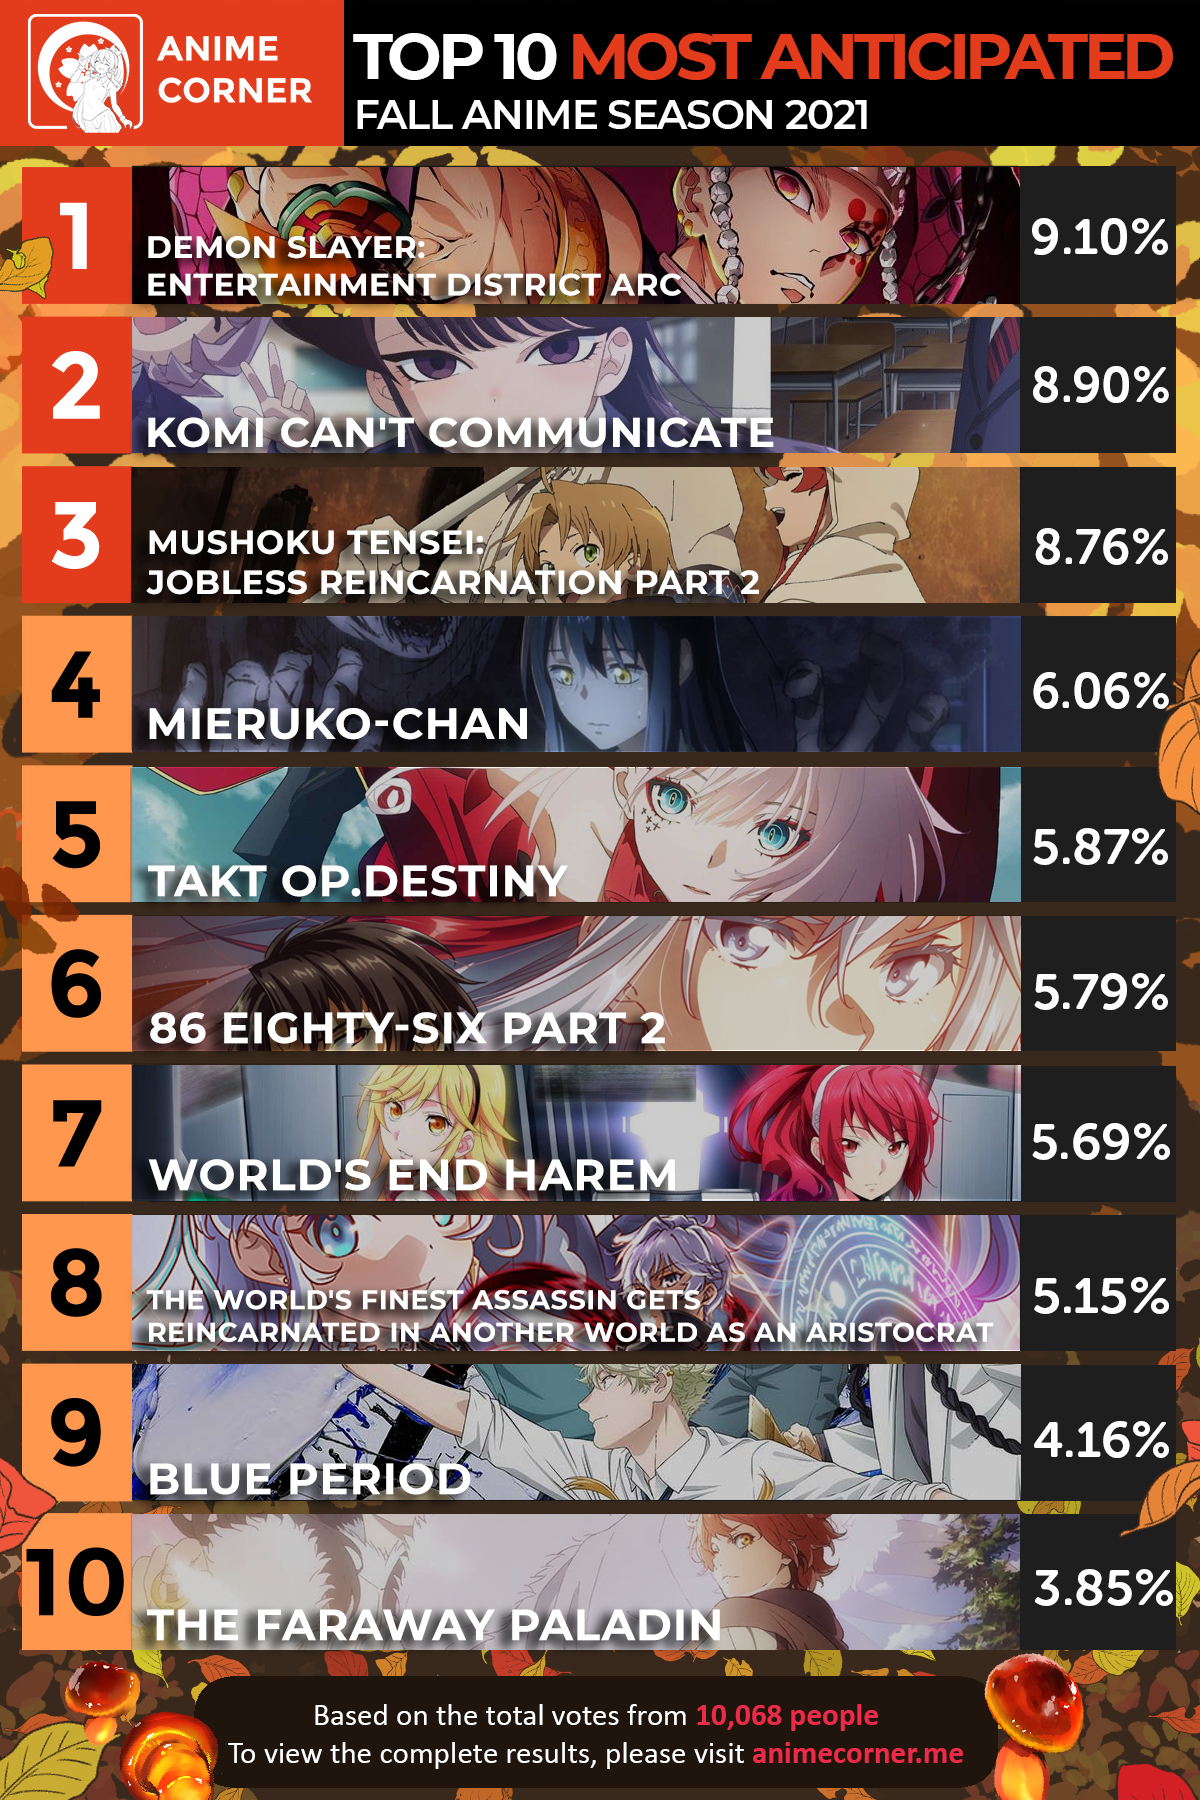 Crunchyroll - Site Anime Corner revela os animes mais esperados pelos fãs  para a temporada de outono 2021